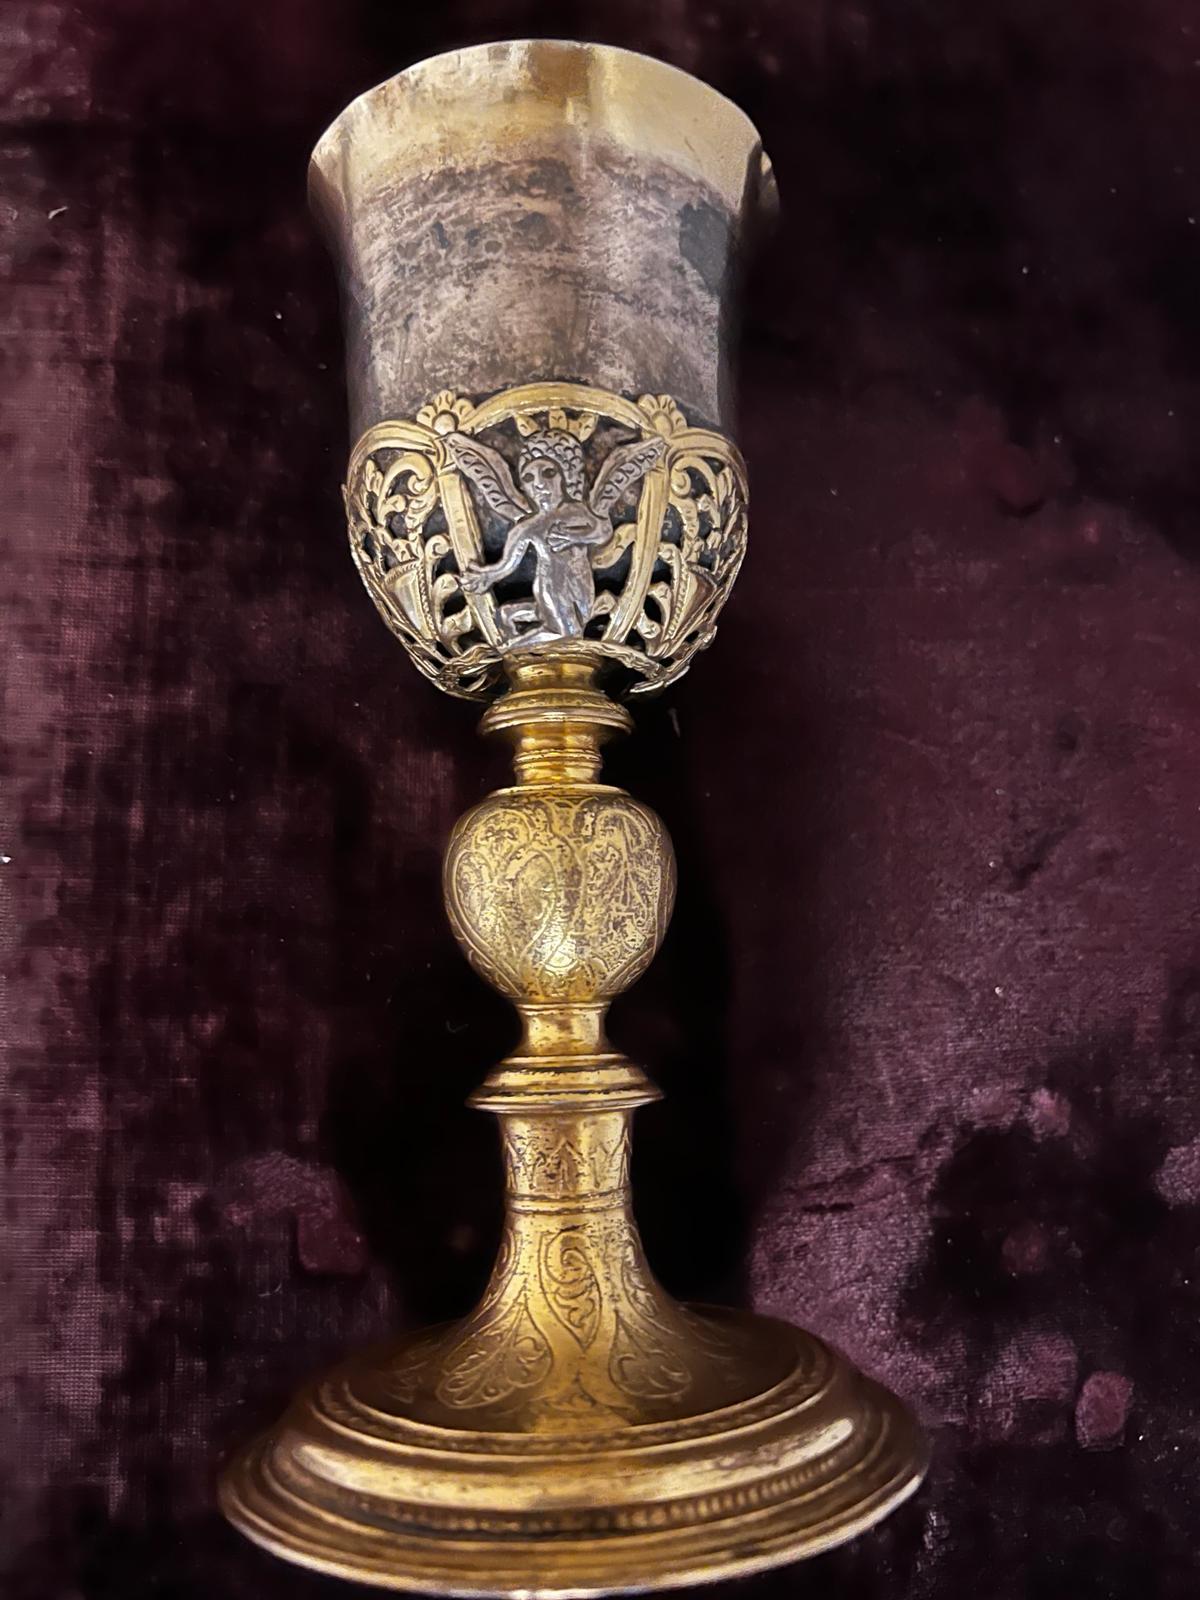 Il s'agit d'un rare calice de tonnelier en vermeil, en or argenté et à trois anges en argent sterling, originaire d'Augsbourg (Allemagne) dans les années 1500. Le gobelet mesure 21 cm de haut, 10 cm de diamètre et pèse 420 g, soit près d'une livre